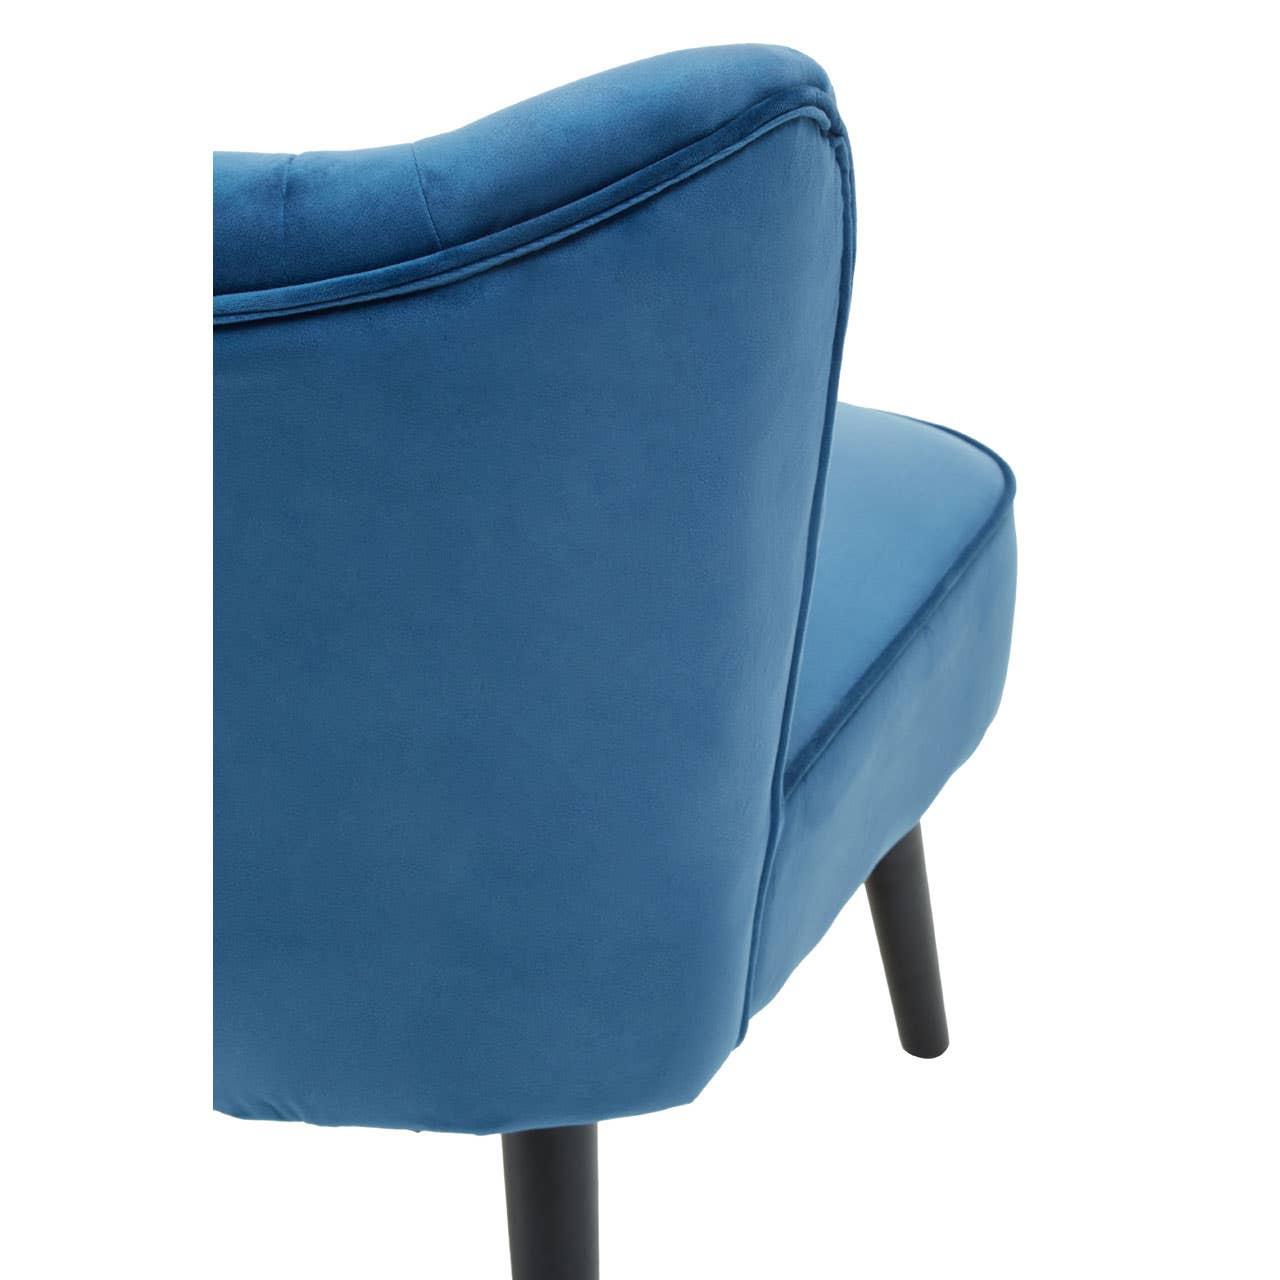 Noosa & Co. Living Regents Park Blue Velvet Chair House of Isabella UK